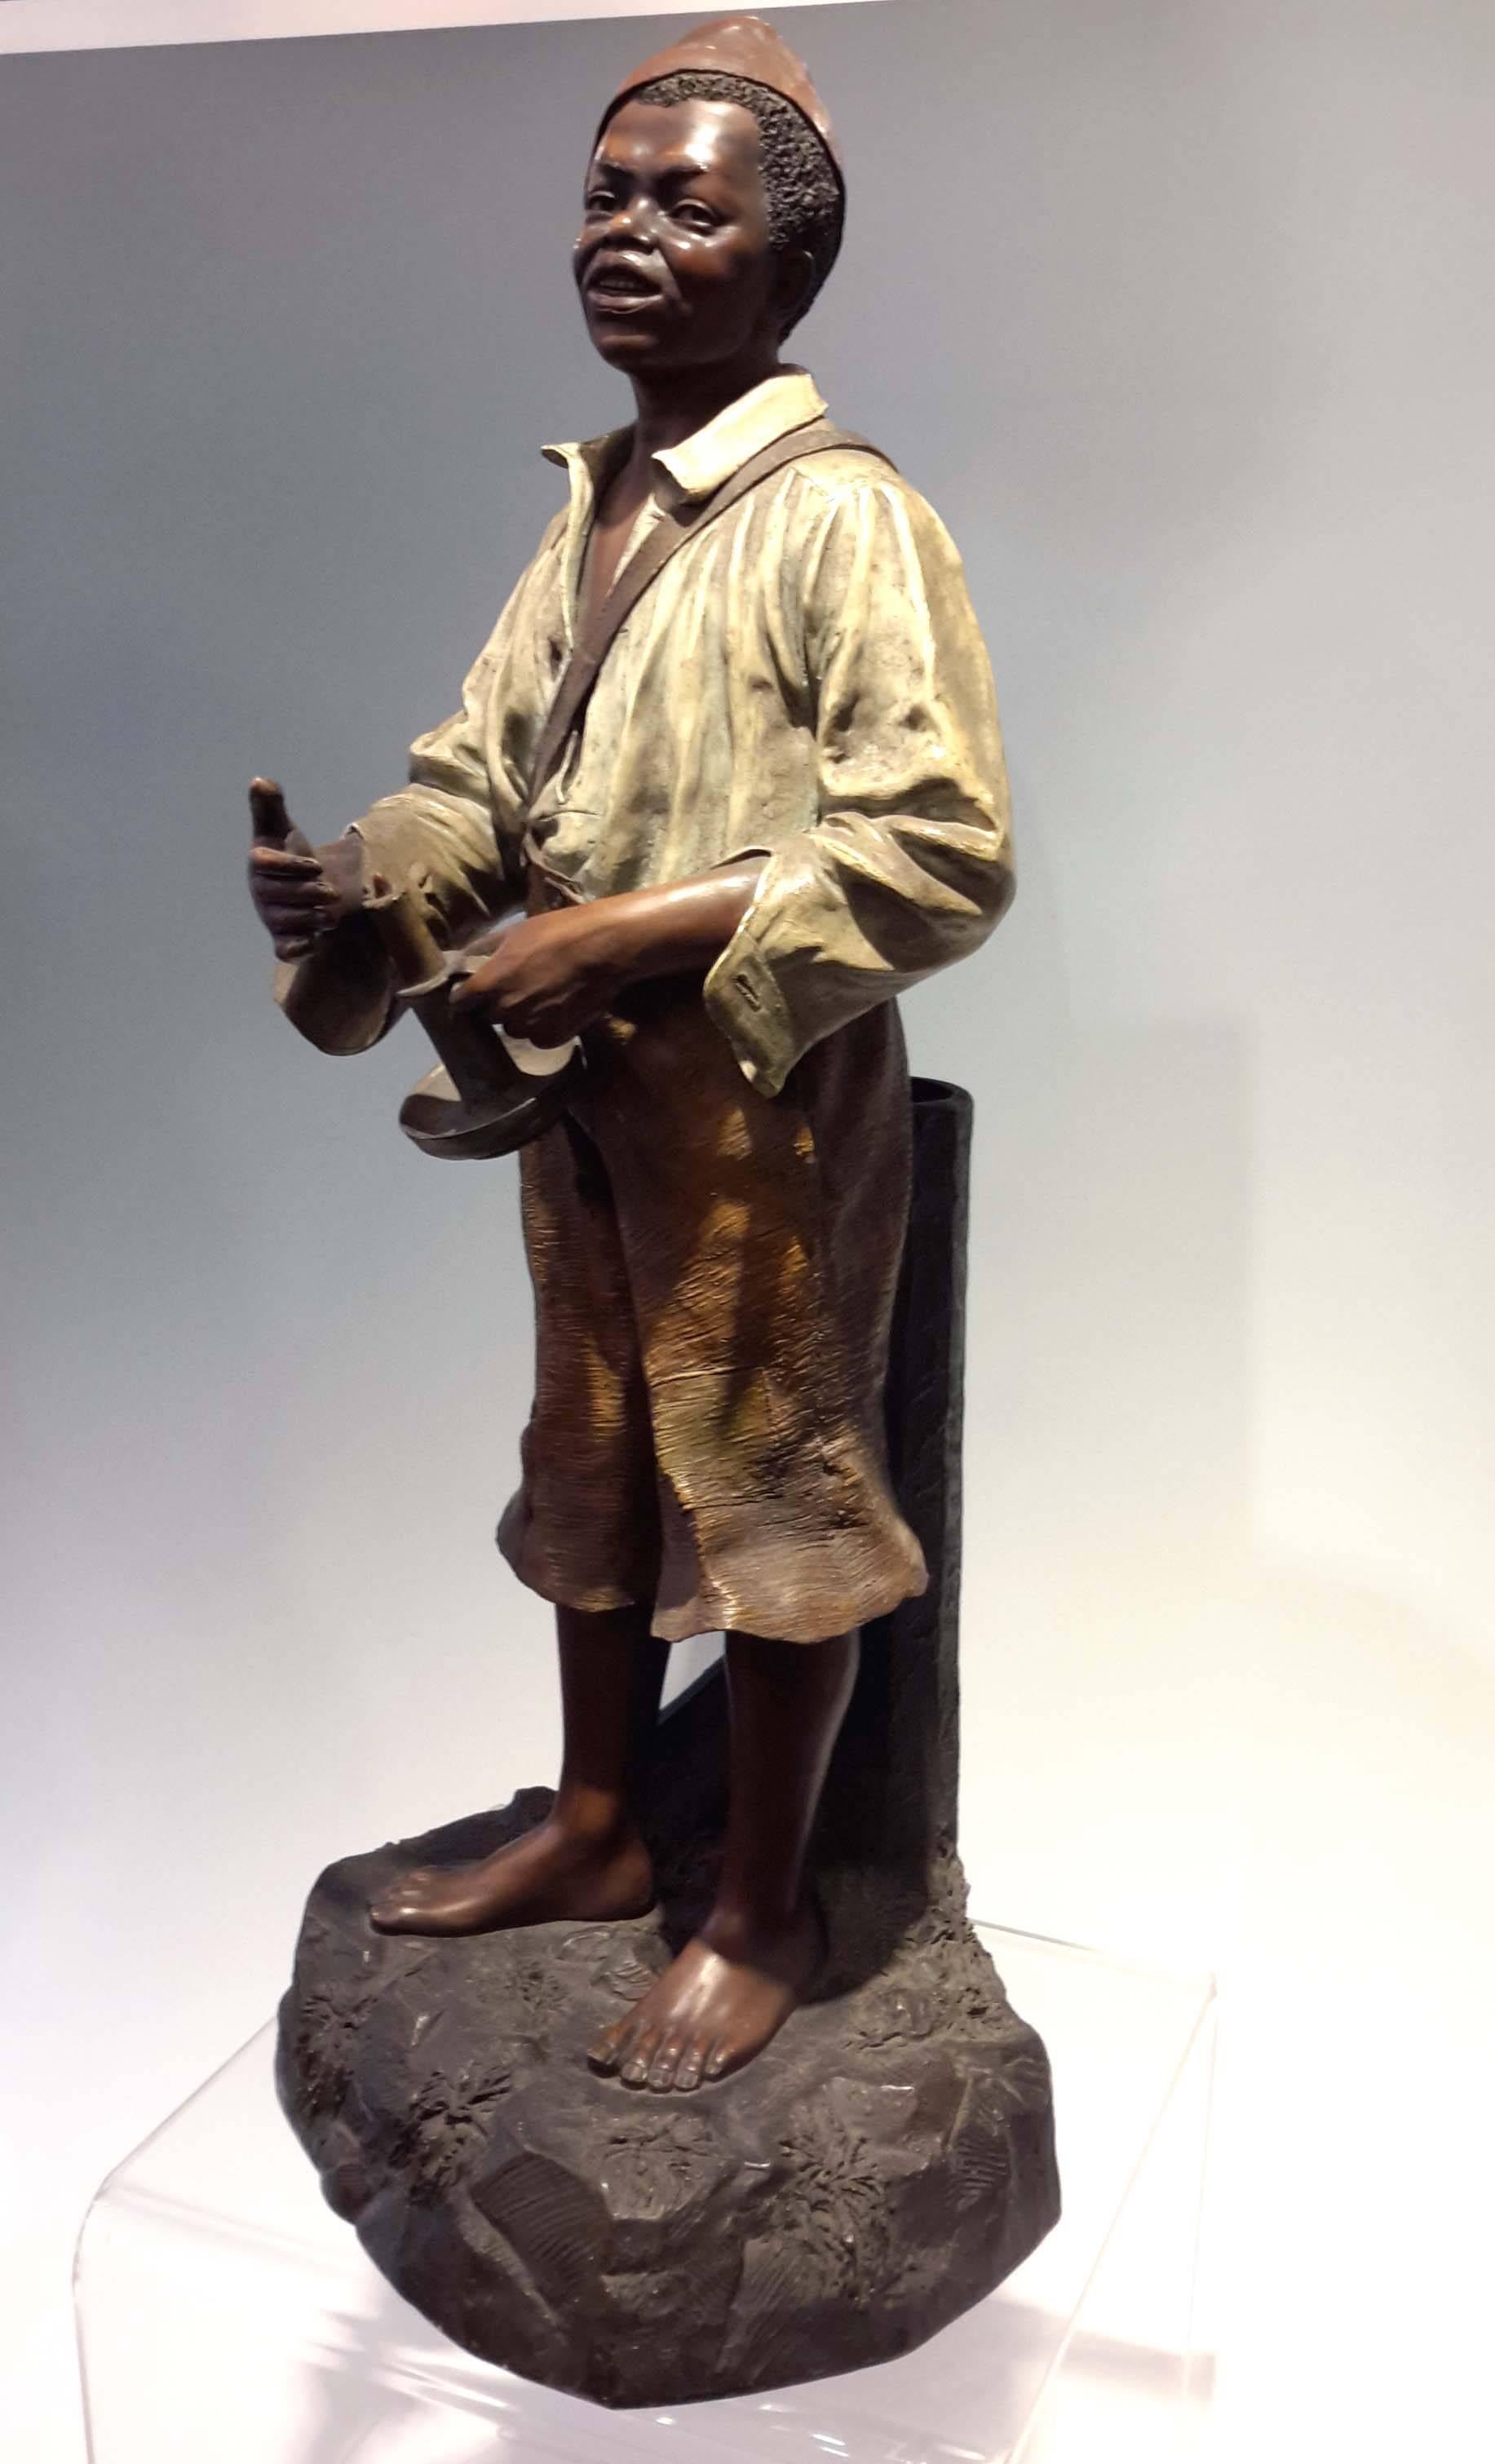 Aesthetic Movement Johann Maresch Terracotta Figure an African American Boy, 19th century